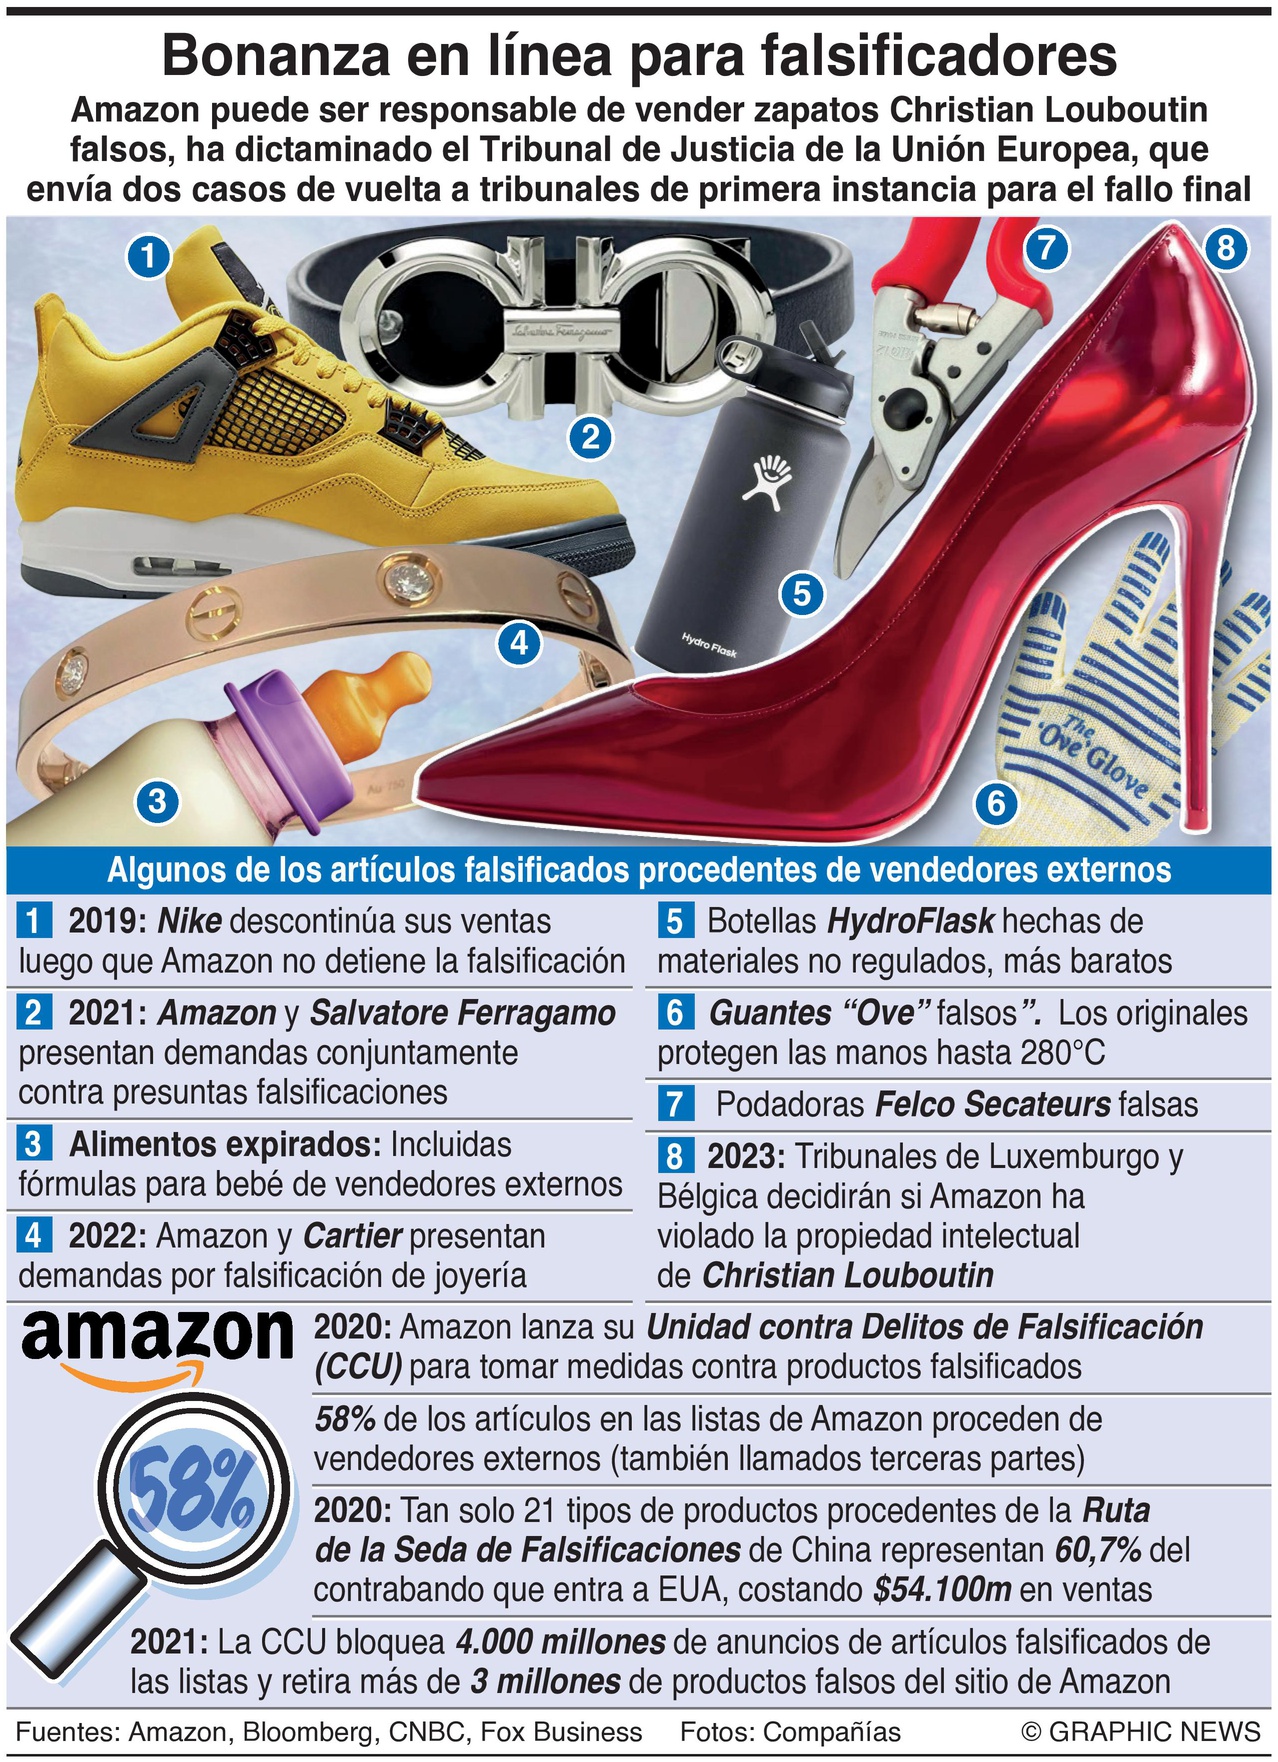 La Jornada on Twitter: "#Amazon puede ser responsable de vender #zapatos Christian Louboutin falsos, ha dictaminado el de Justicia de la #UniónEuropea, que envía dos casos de vuelta a tribunales de